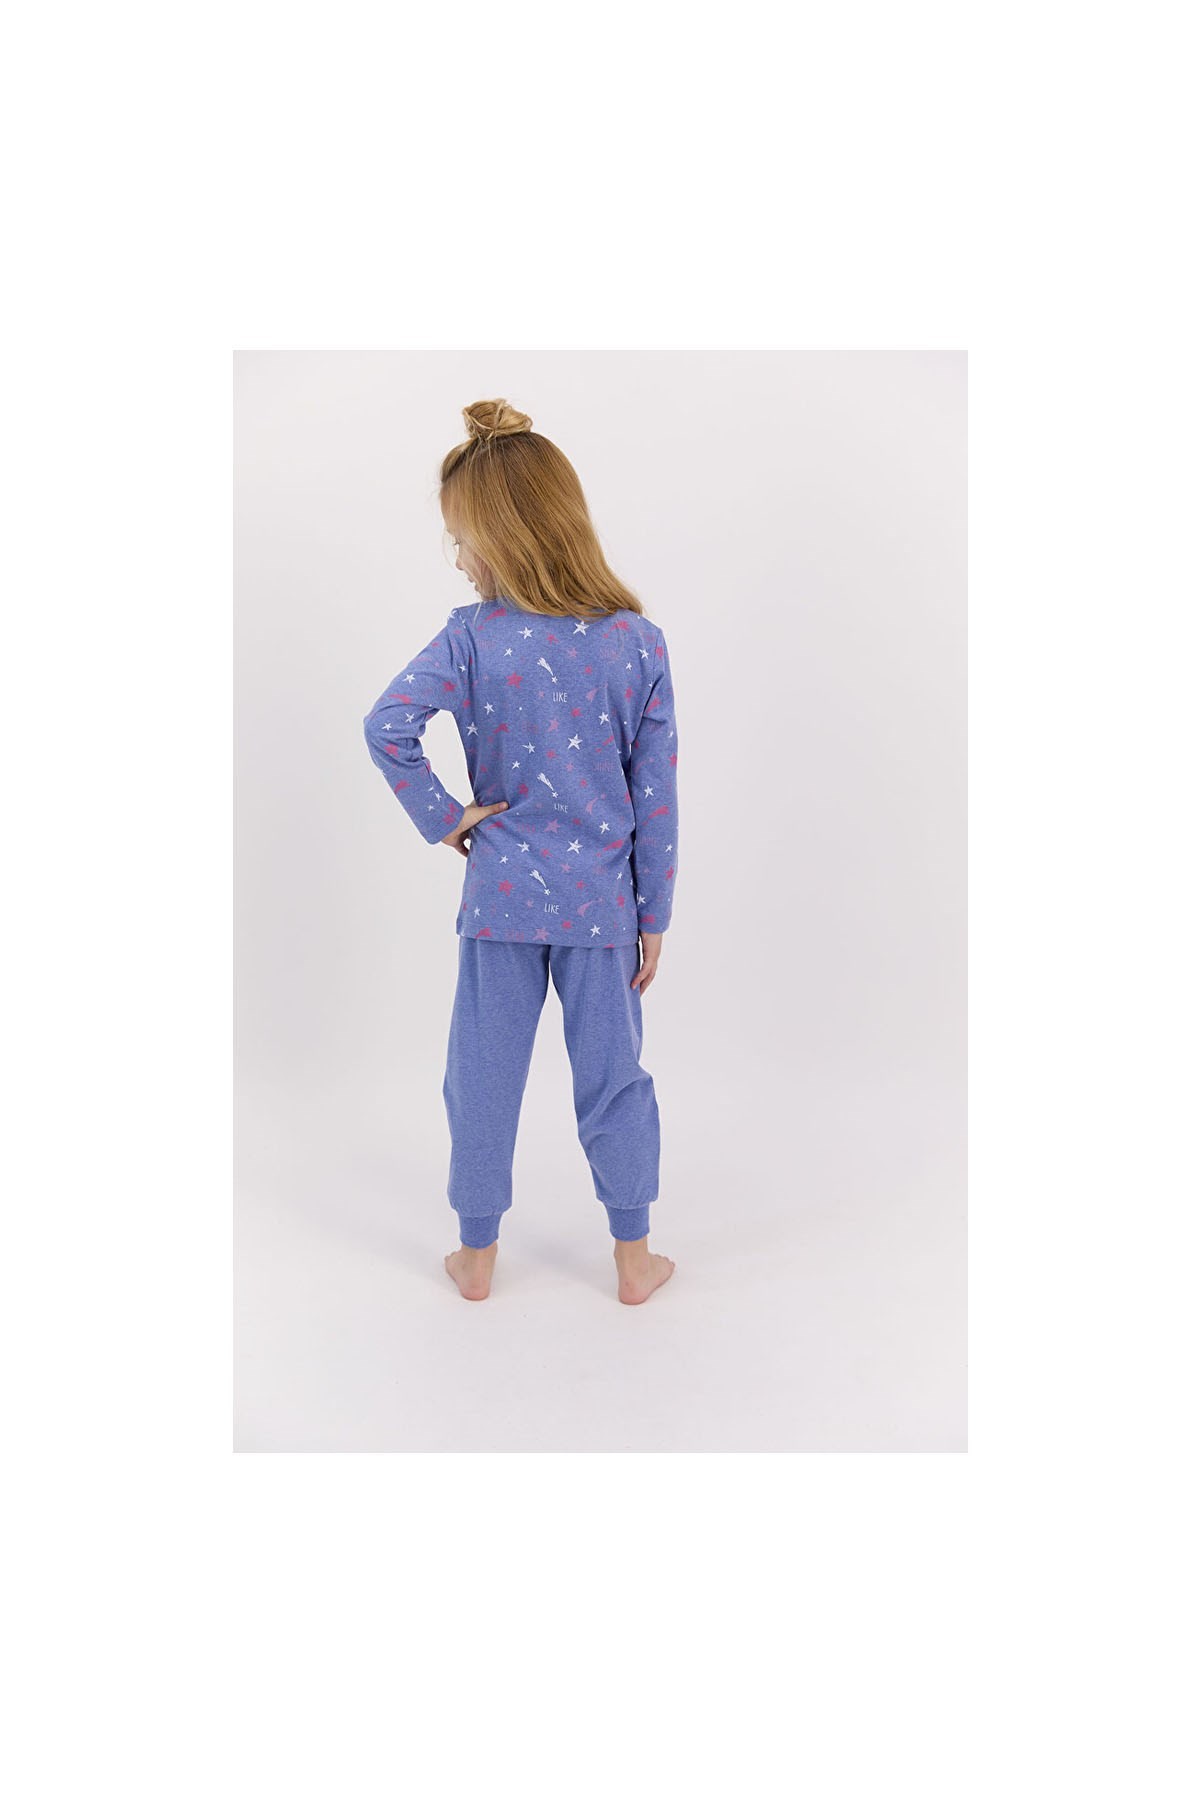 Roly Poly Kız Çocuk Pijama Takım Koyu Mavi